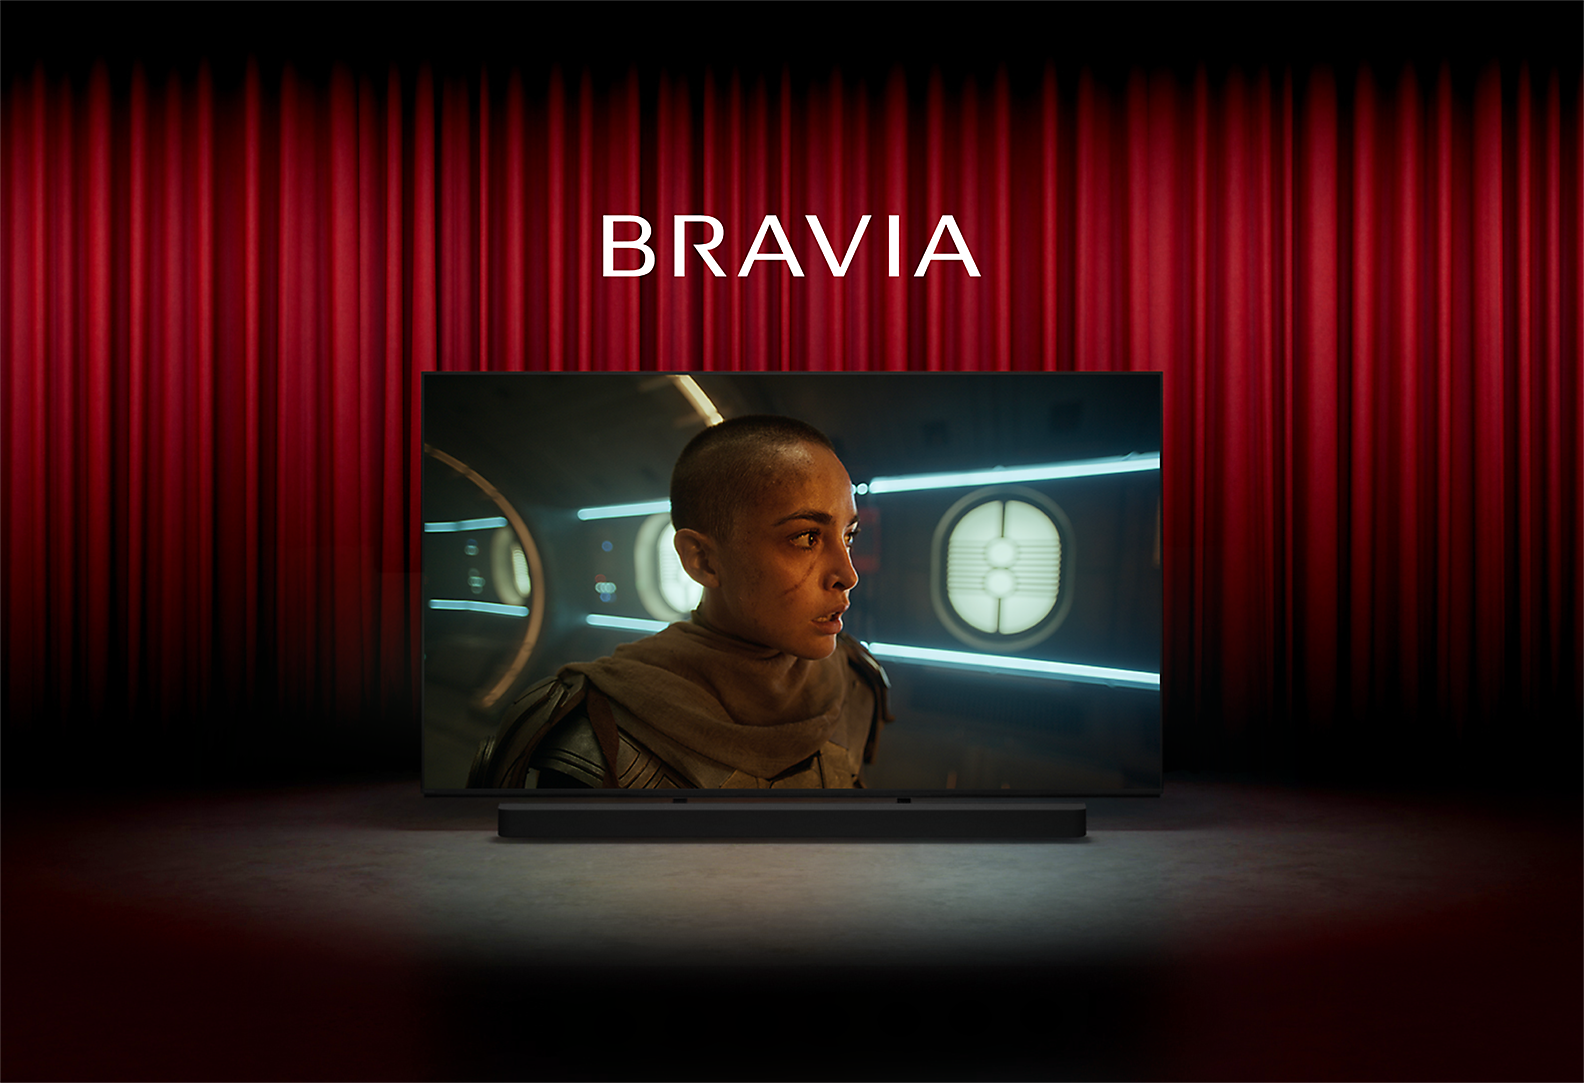 Immagine di un cinema con tende rosse e TV di Sony al centro della scena con schermata di una persona in un film di fantascienza, la parola BRAVIA in alto e la soundbar di Sony in basso